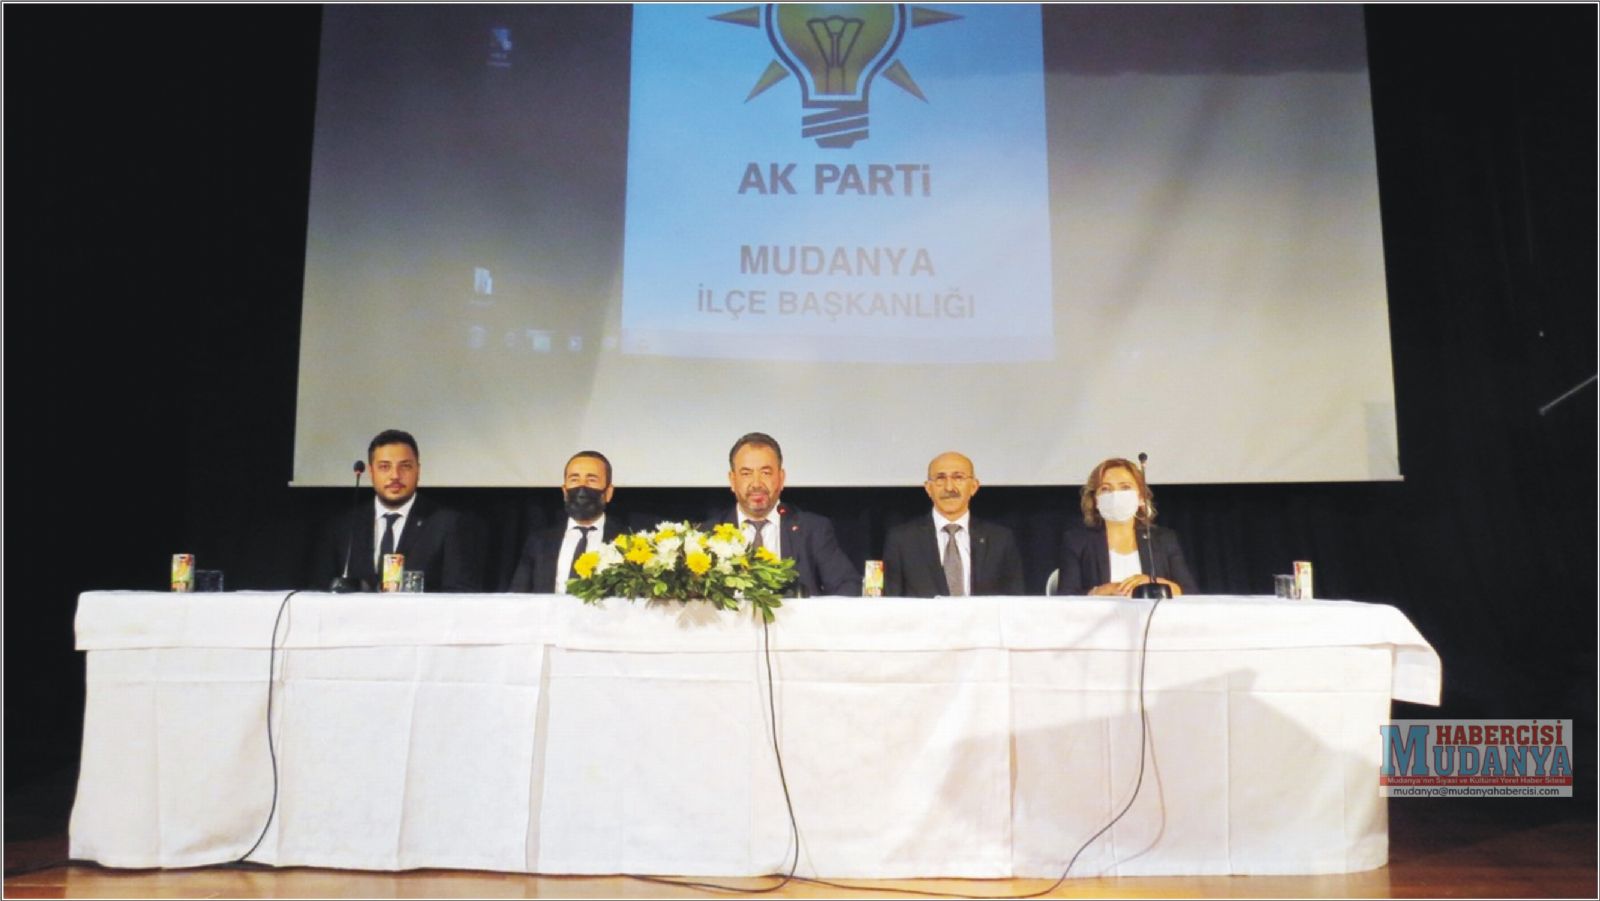 Mudanya AK Parti Divan Meclisi Topland